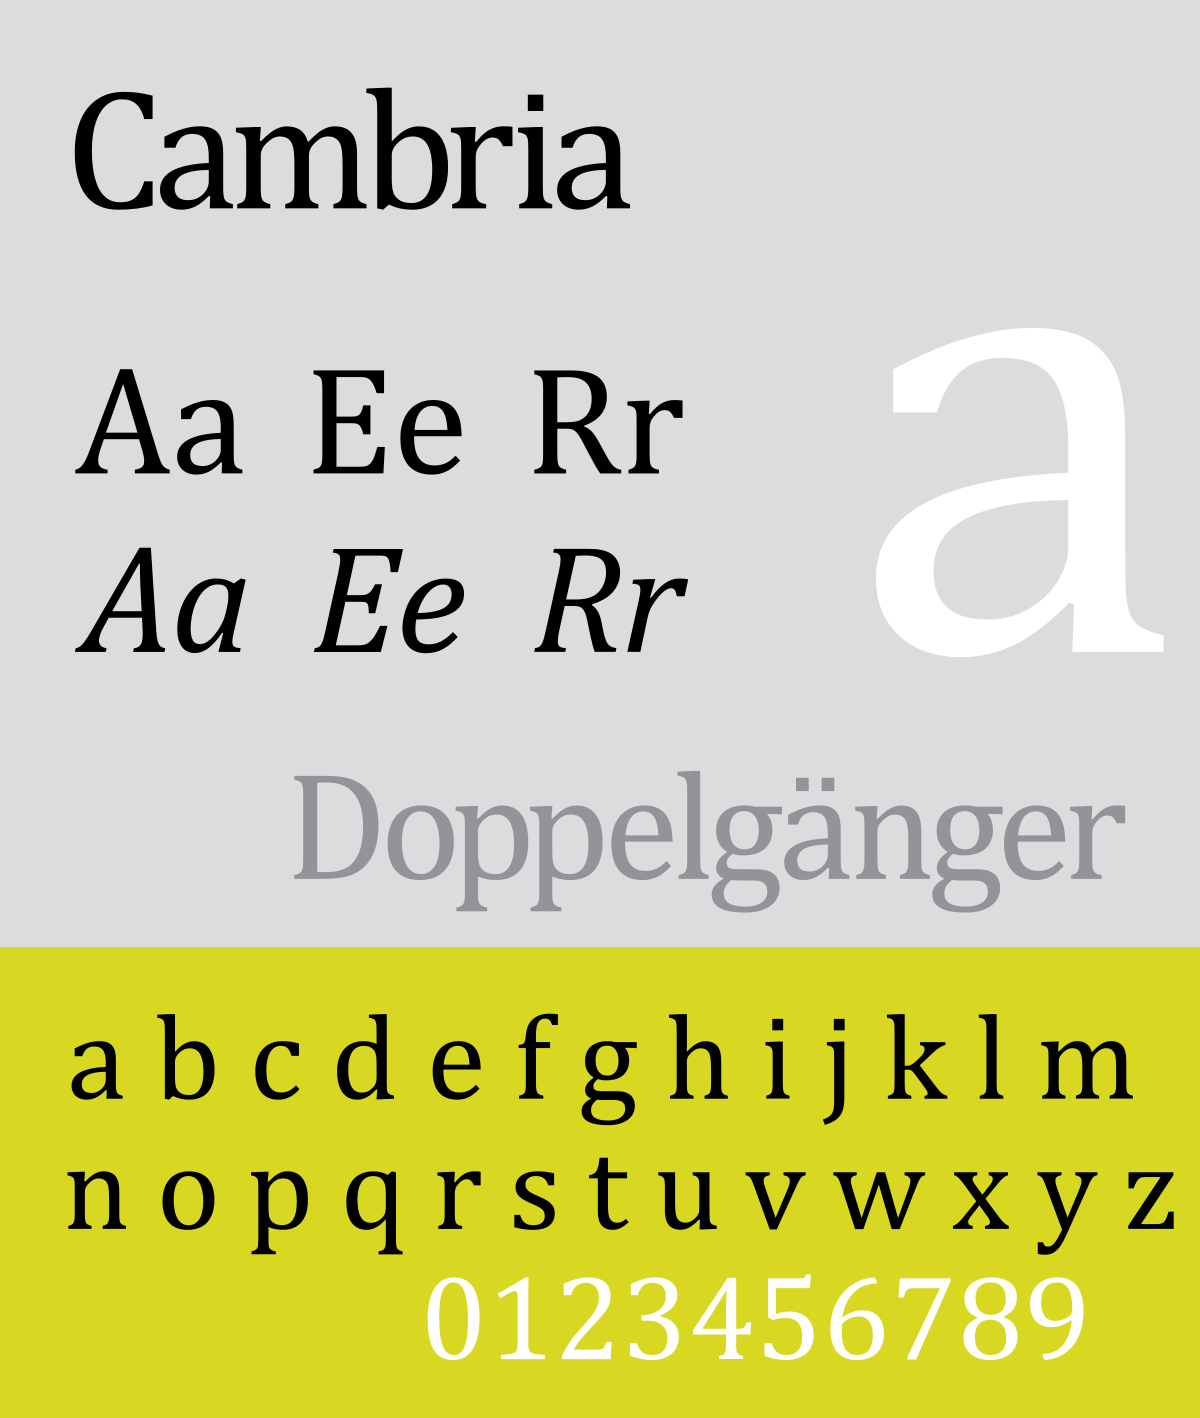 cambria font free download mac